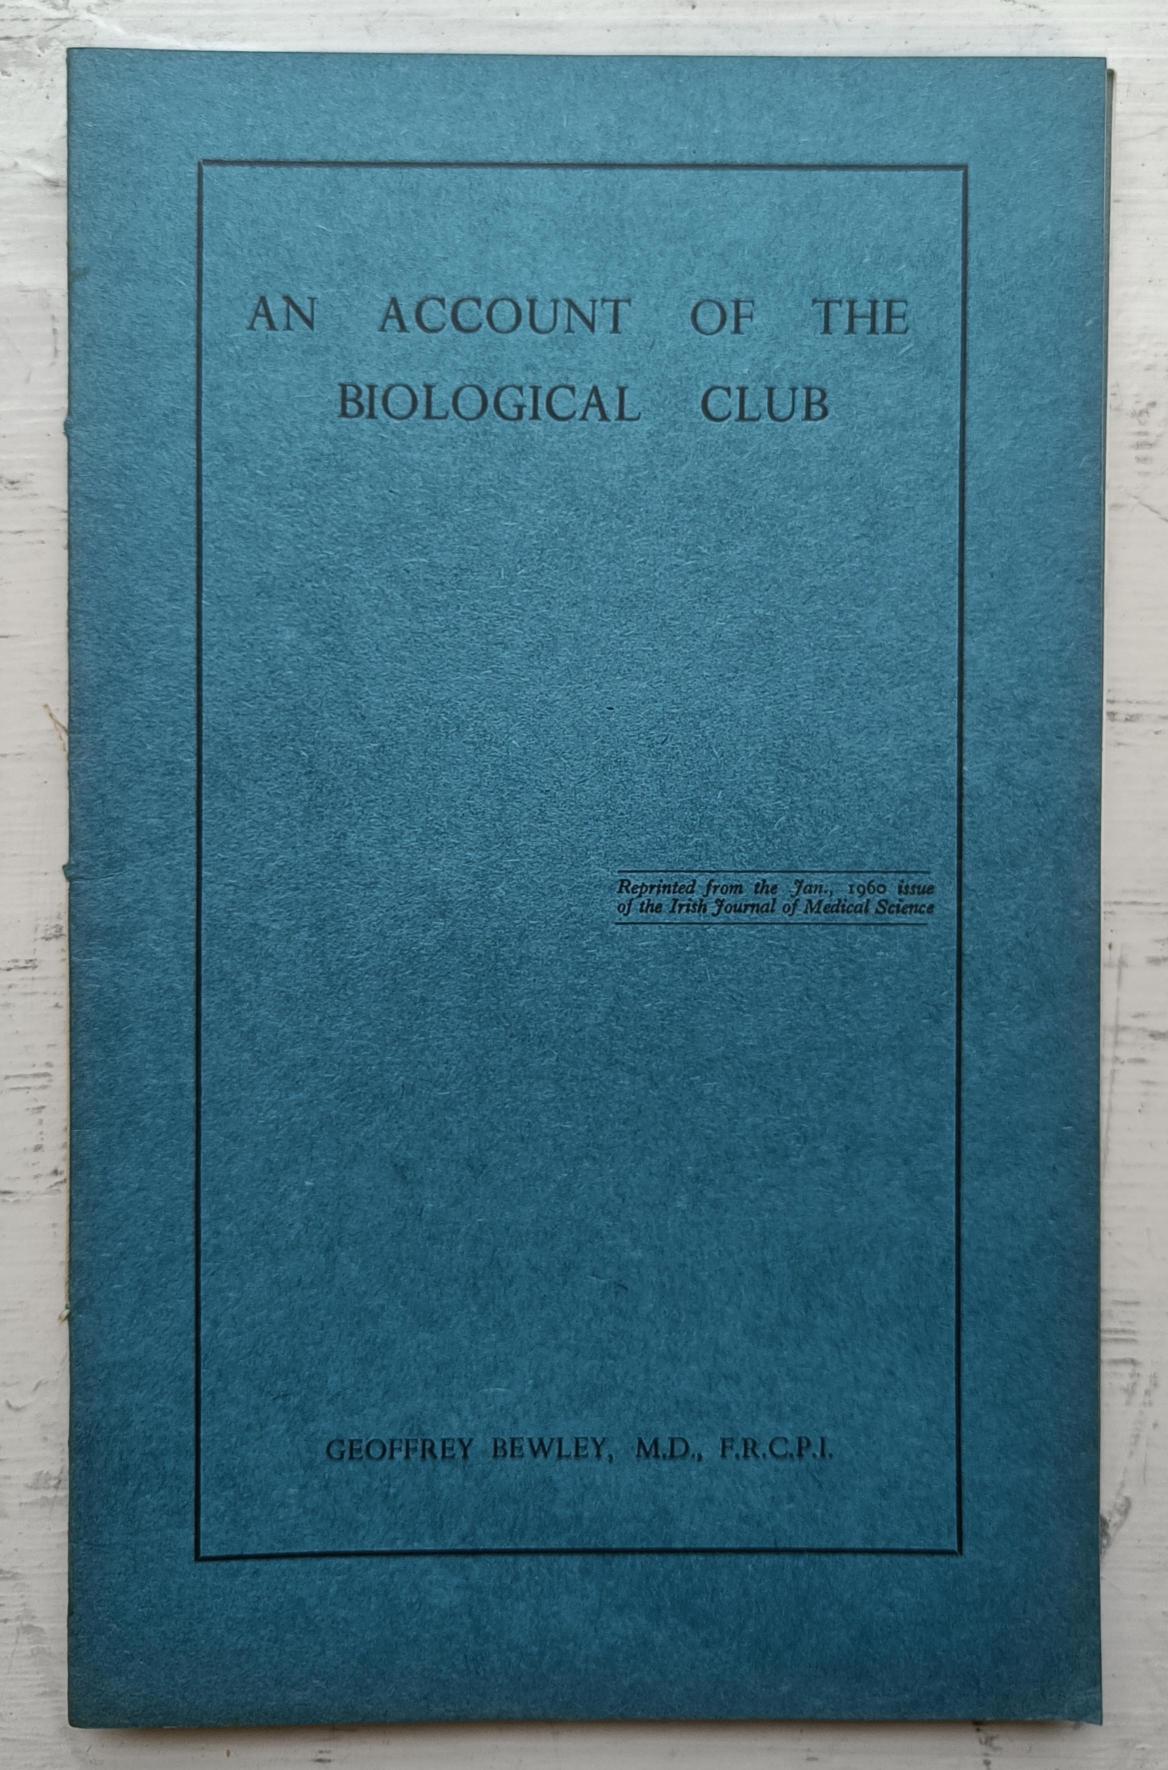 An Account of the Biological Club - Geoffrey Bewley